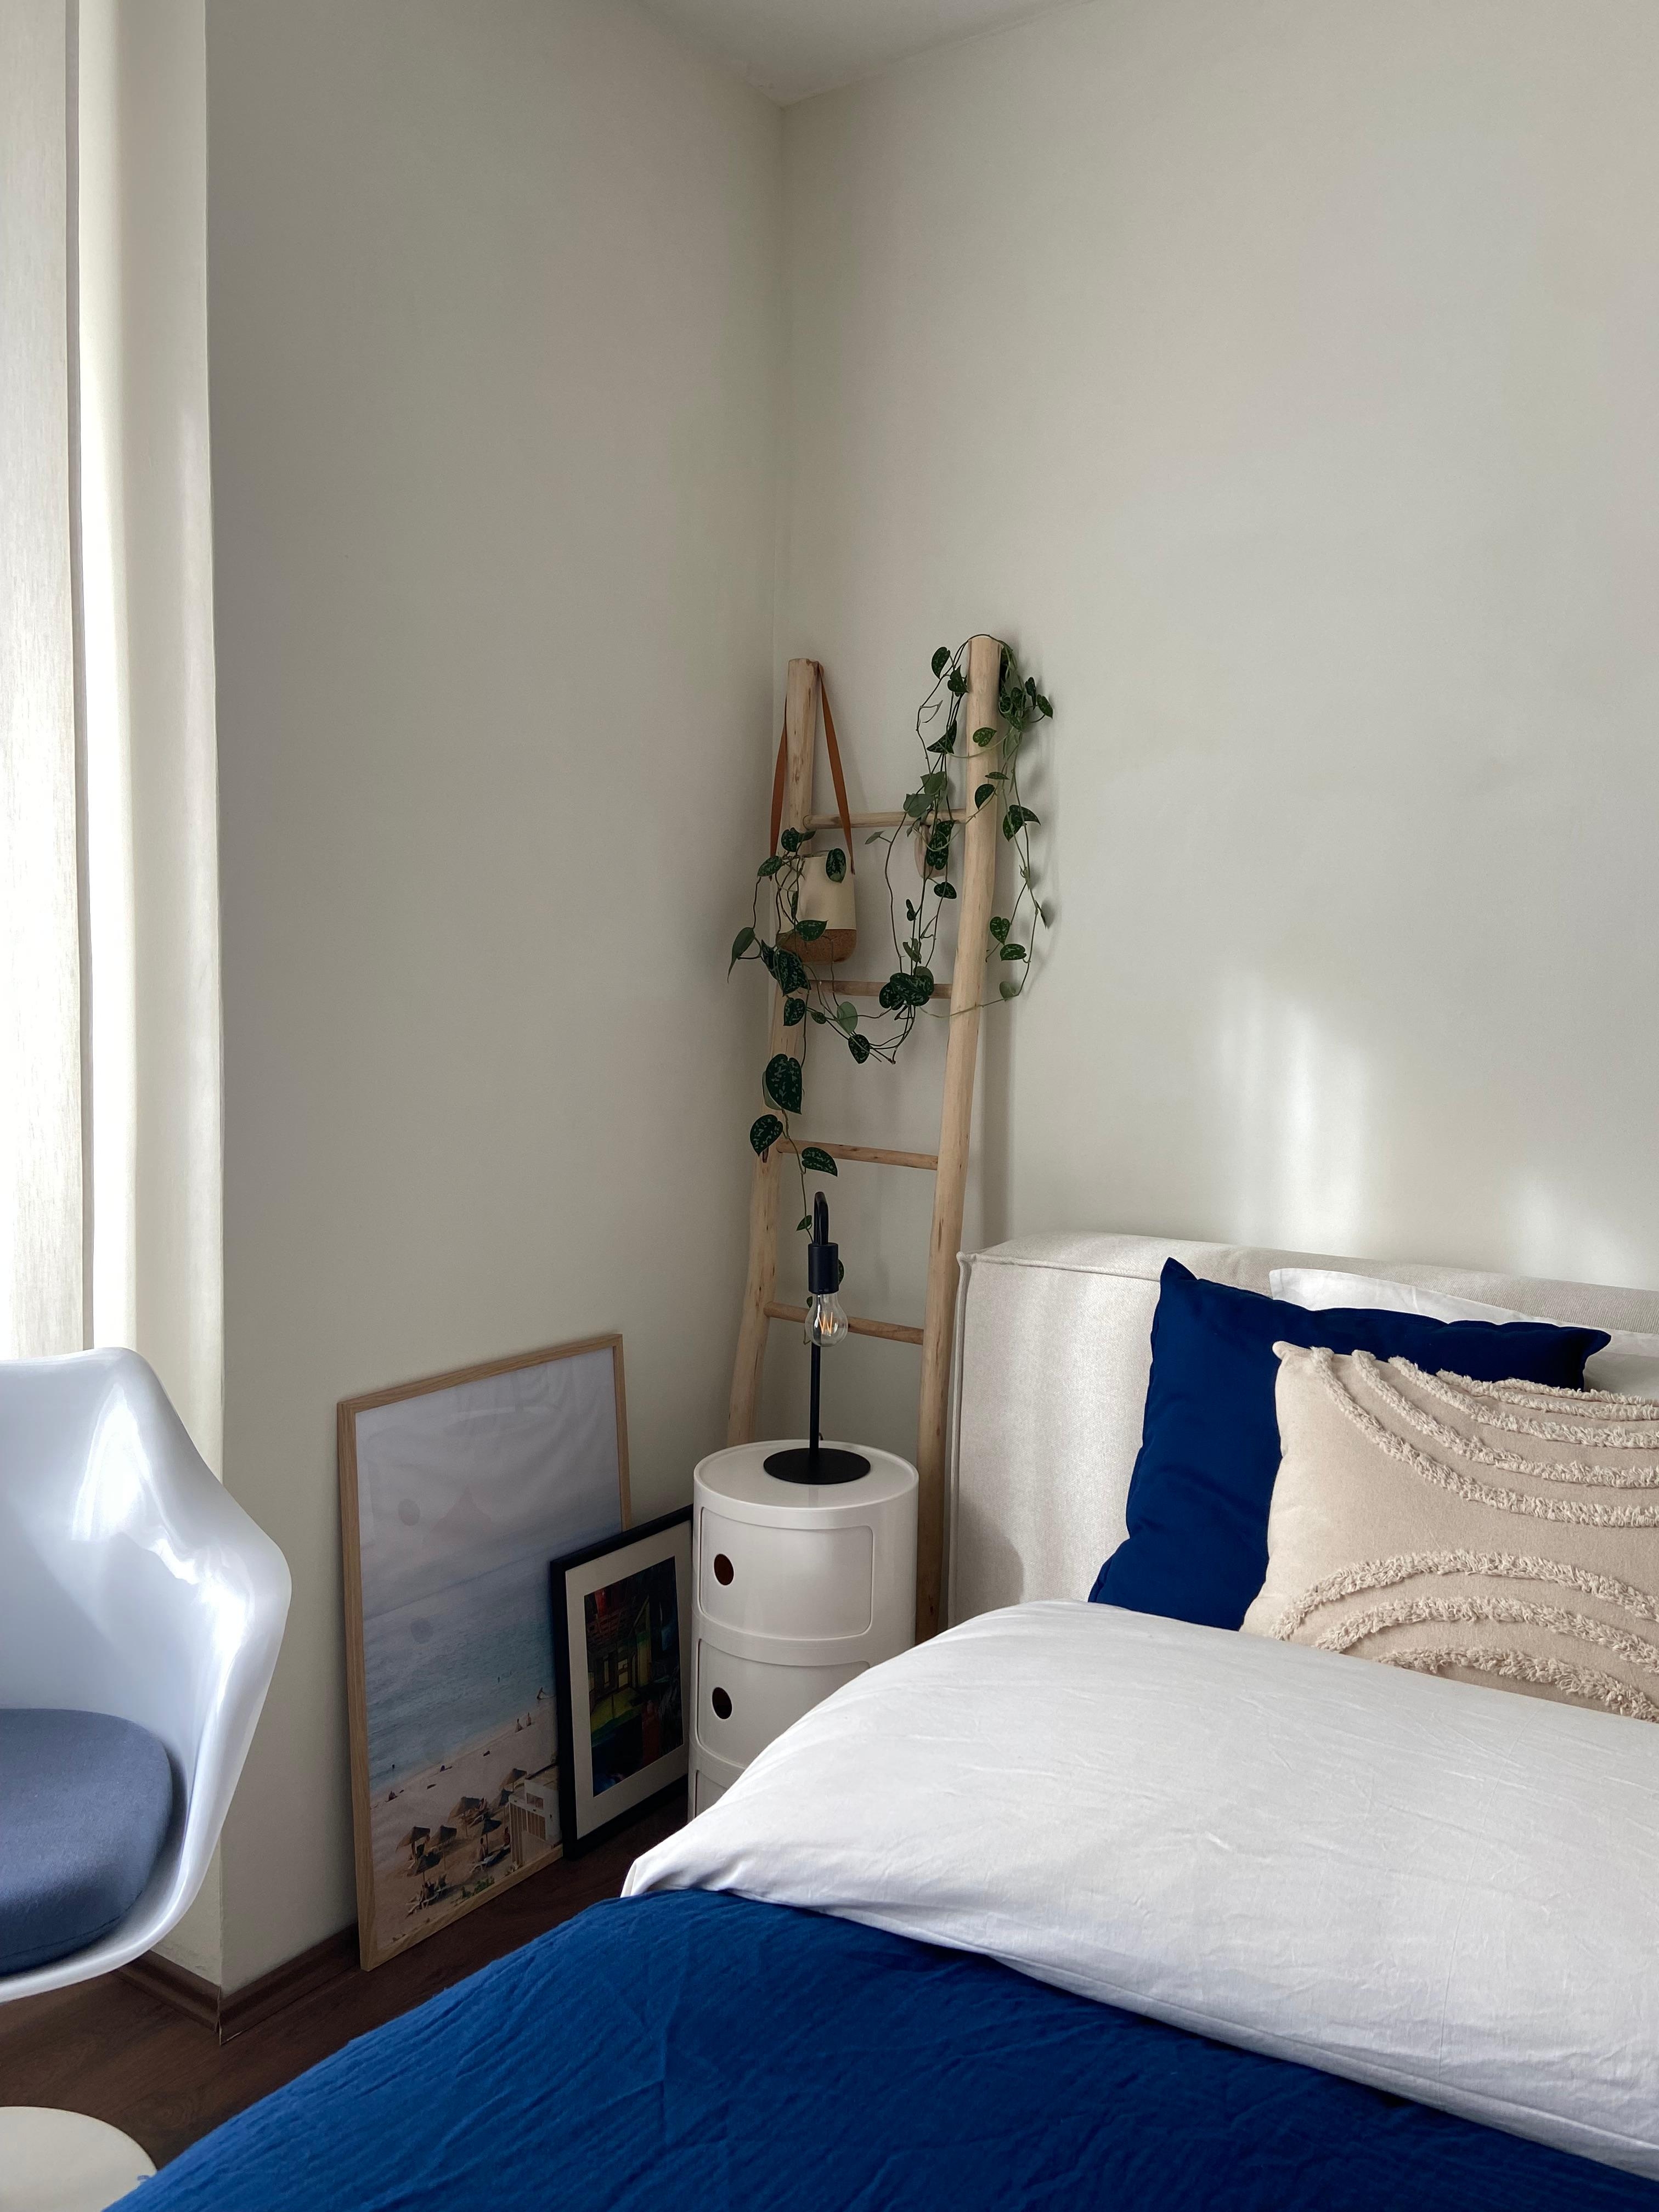 What to do zwischen den Jahren ☁️
#couchstyle#homedesign#interior#bedroom#blue#blauestunde#designclassics#lennon#westwing#zuhause#cozy#beigeinterior#tulip#beige